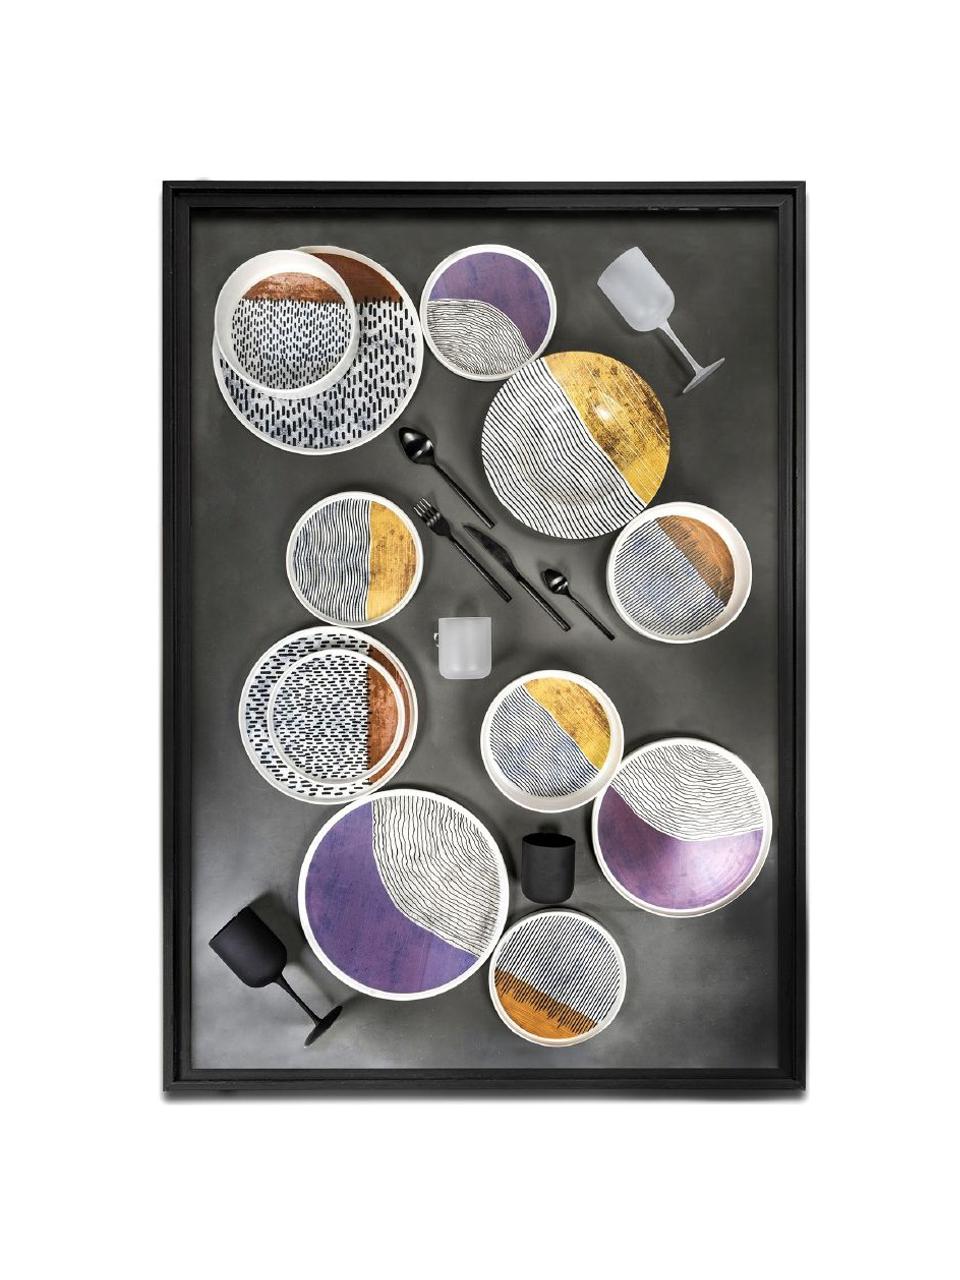 Sada hlubokých talířů s barevným designem Switch, 4 díly, Keramika, Světle šedá, černá, více barev, Ø 21 cm